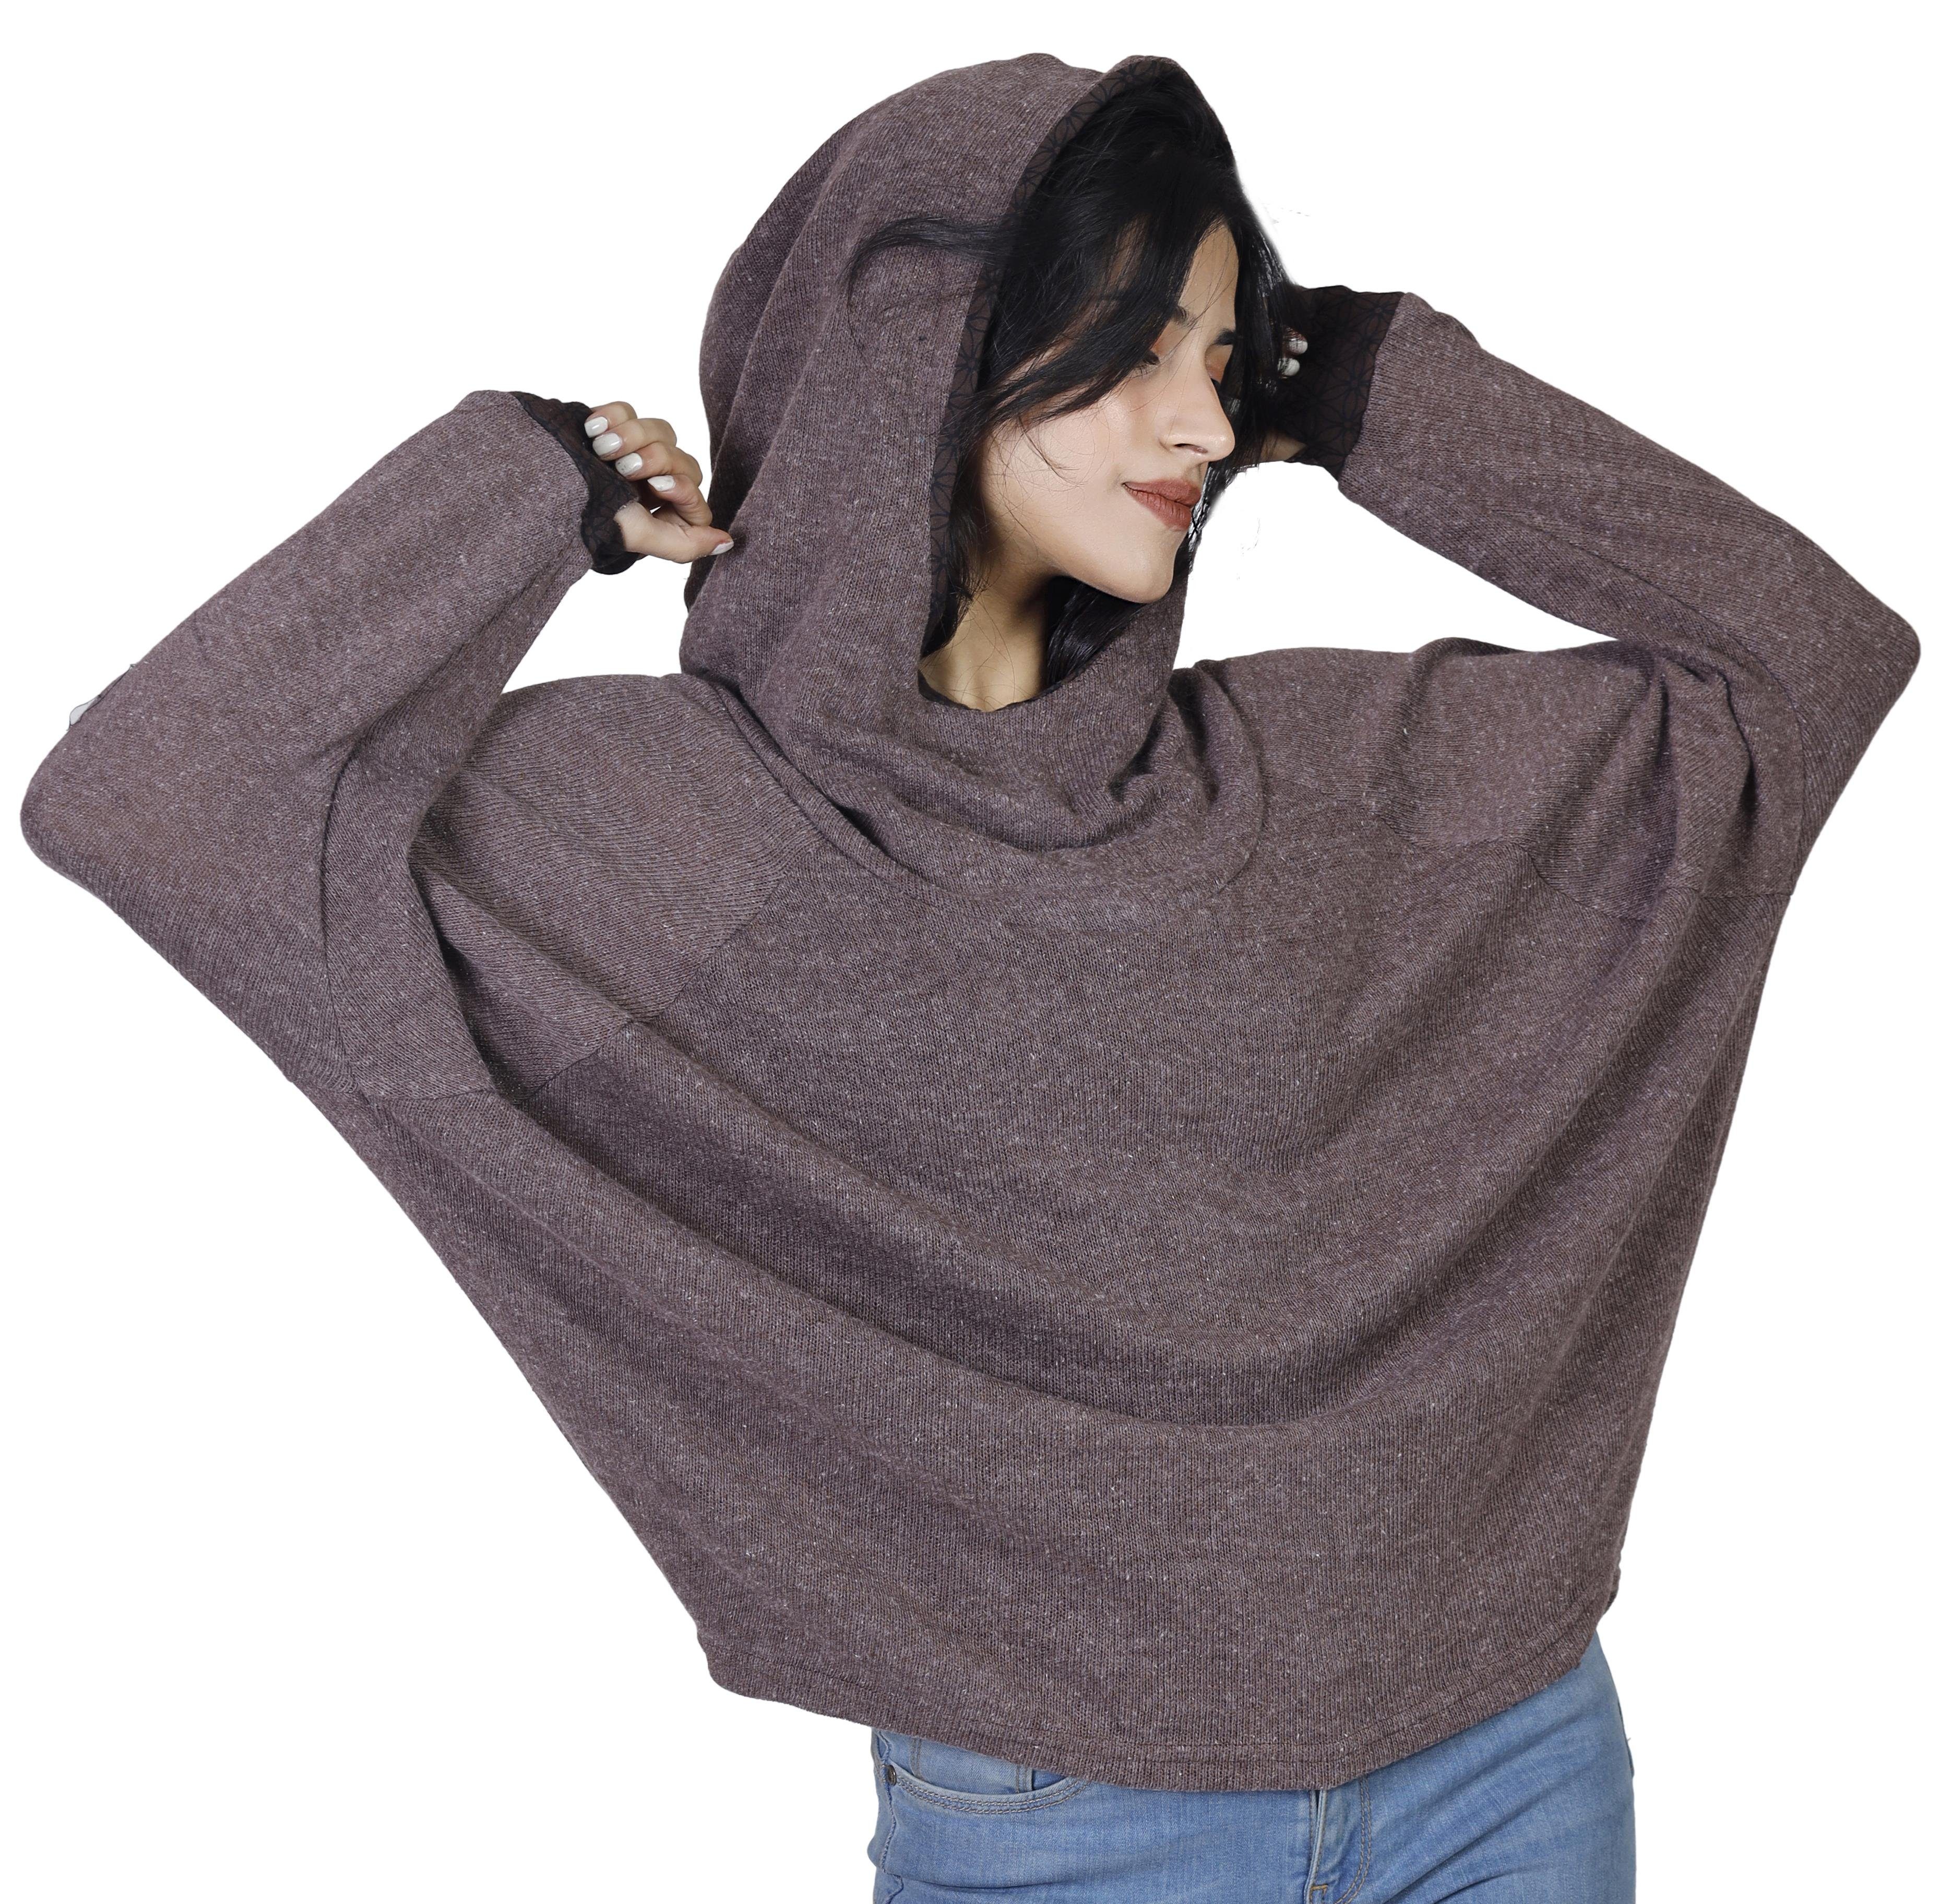 Pullover, alternative Guru-Shop Hoody, -.. Longsleeve Bekleidung Sweatshirt, braun Kapuzenpullover